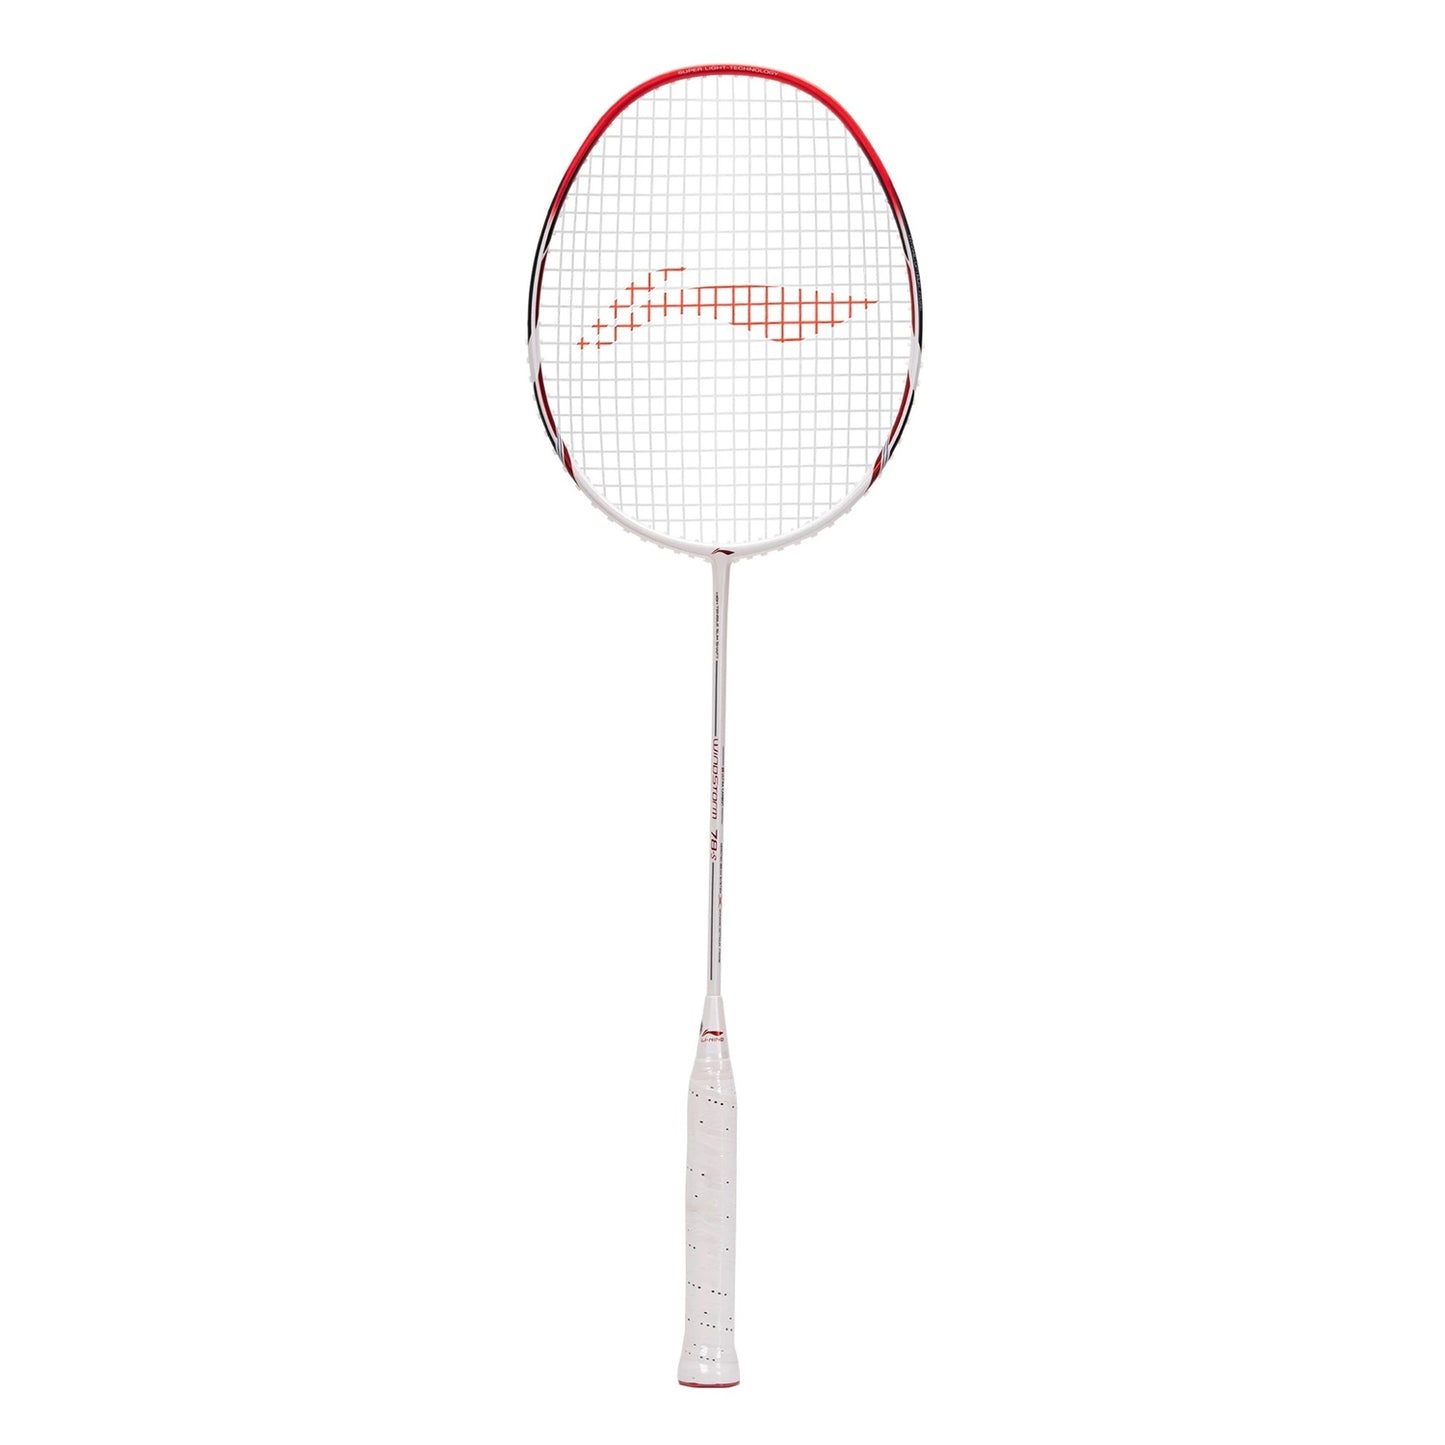 Li-Ning Windstorm 78s UnStrung Badminton Racquet - Best Price online Prokicksports.com